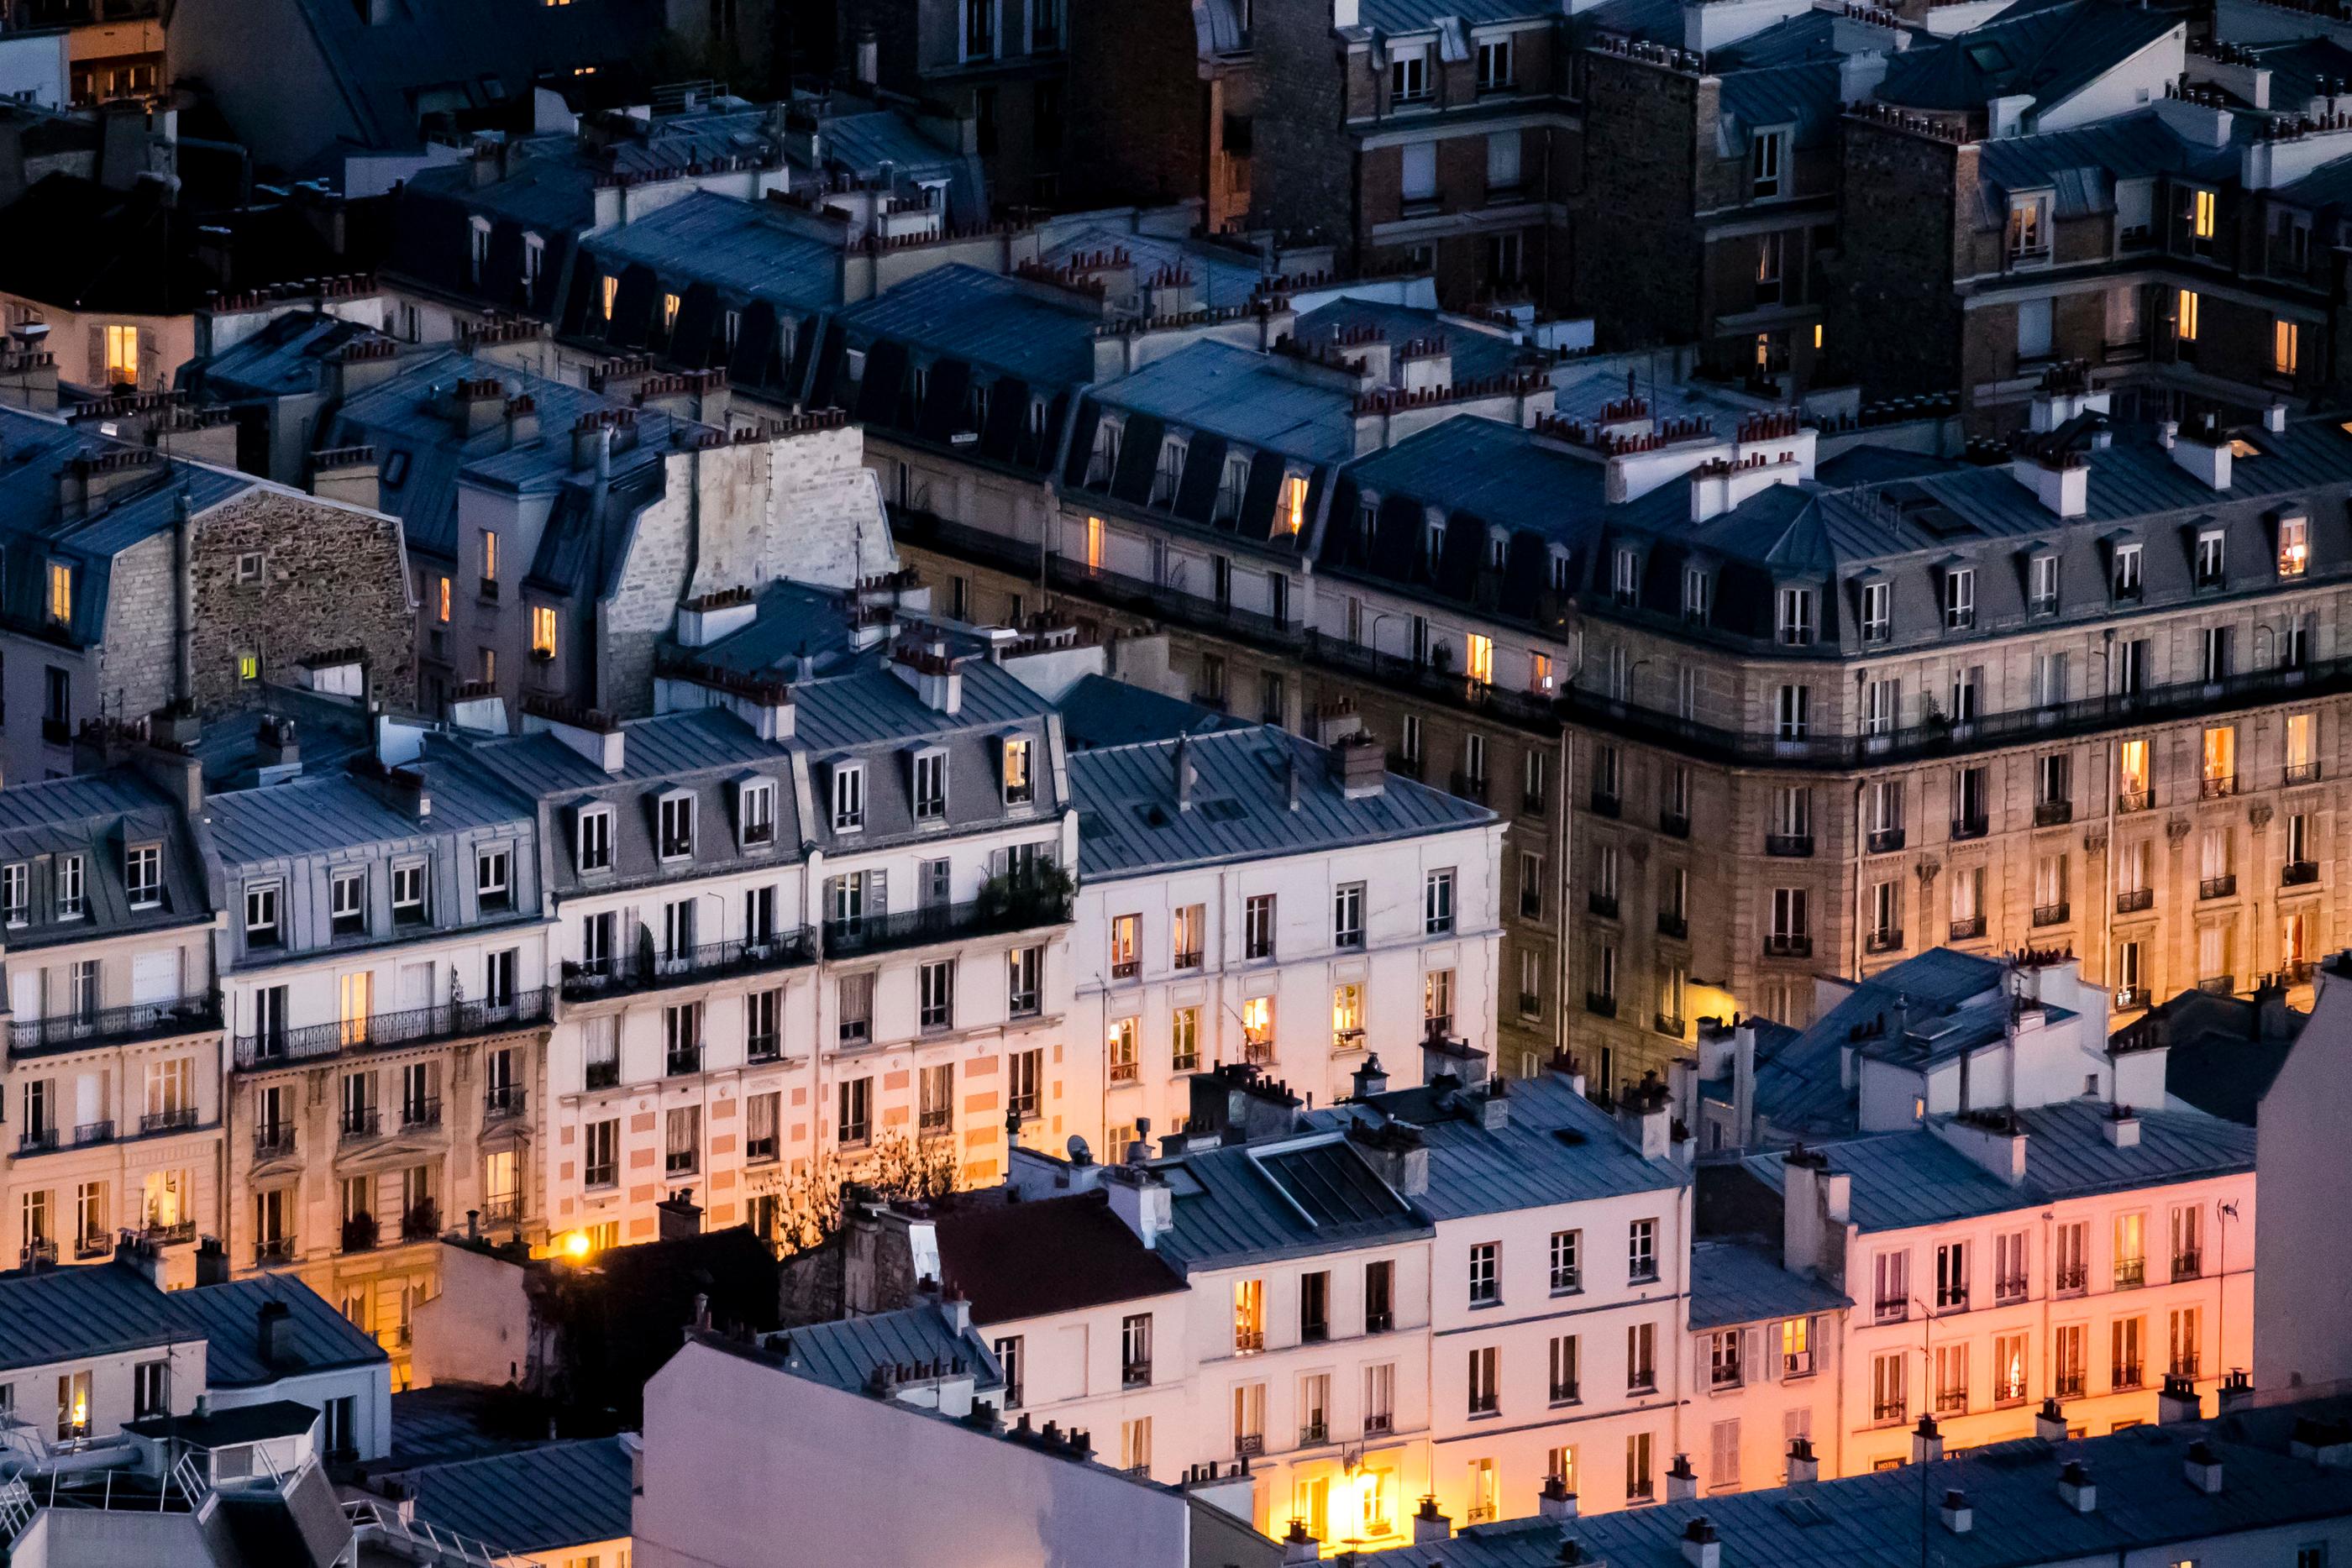 La chute des prix de l'immobilier gagne du terrain en Île-de-France, notamment à Paris qui enregistre une baisse de 1,3% en trois mois. Vincent Isore/IP3